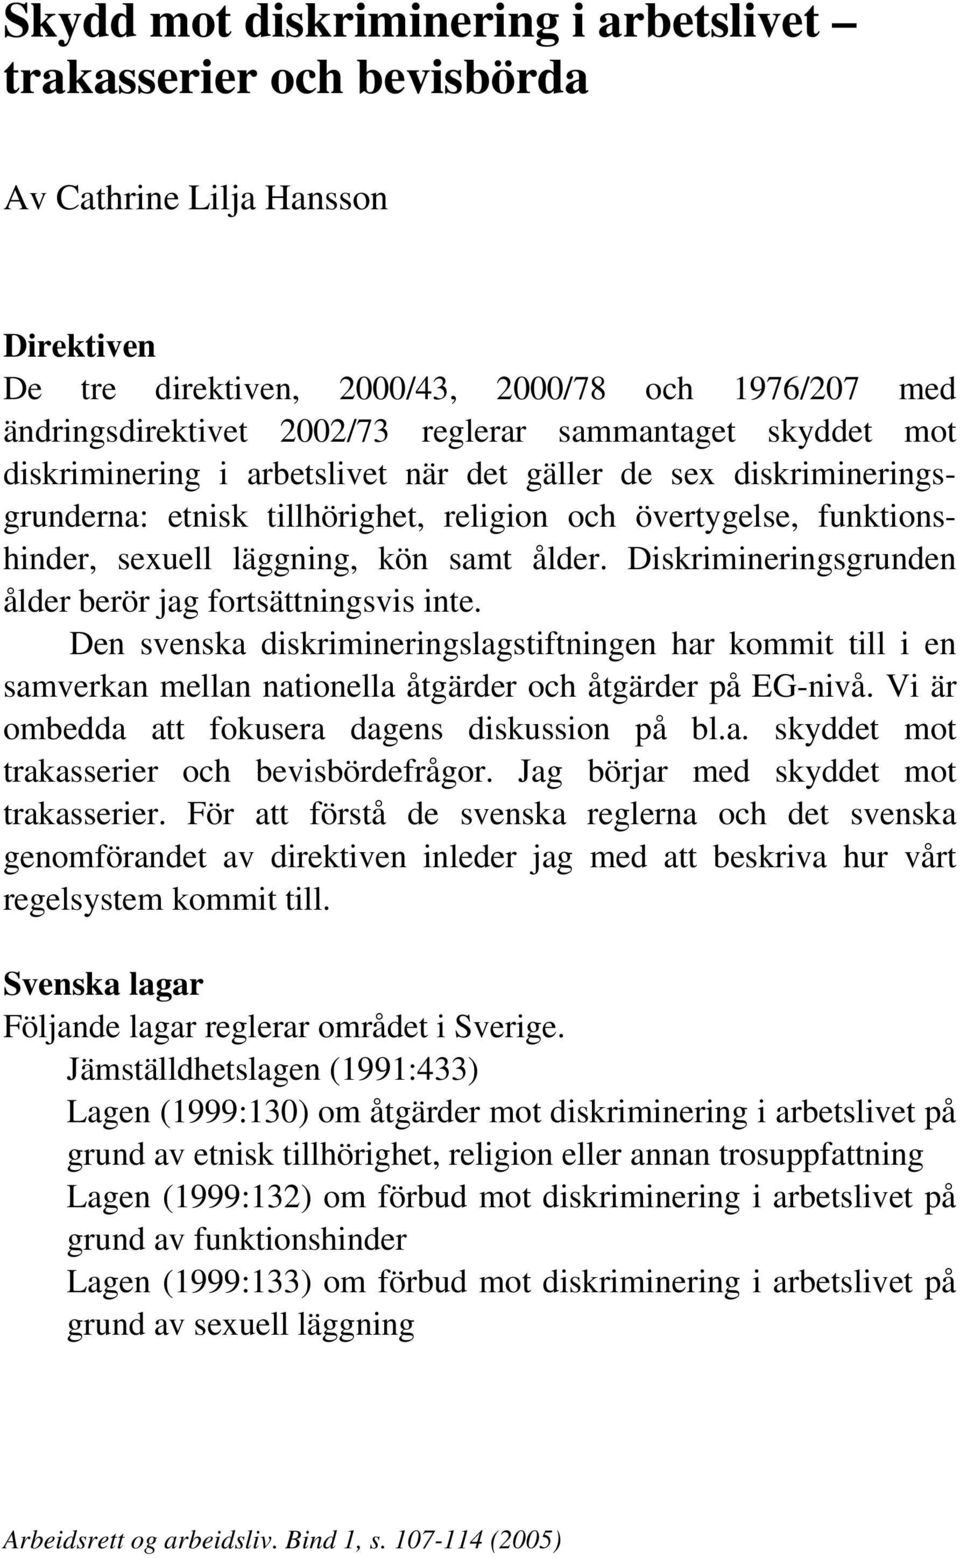 Diskrimineringsgrunden ålder berör jag fortsättningsvis inte. Den svenska diskrimineringslagstiftningen har kommit till i en samverkan mellan nationella åtgärder och åtgärder på EG-nivå.